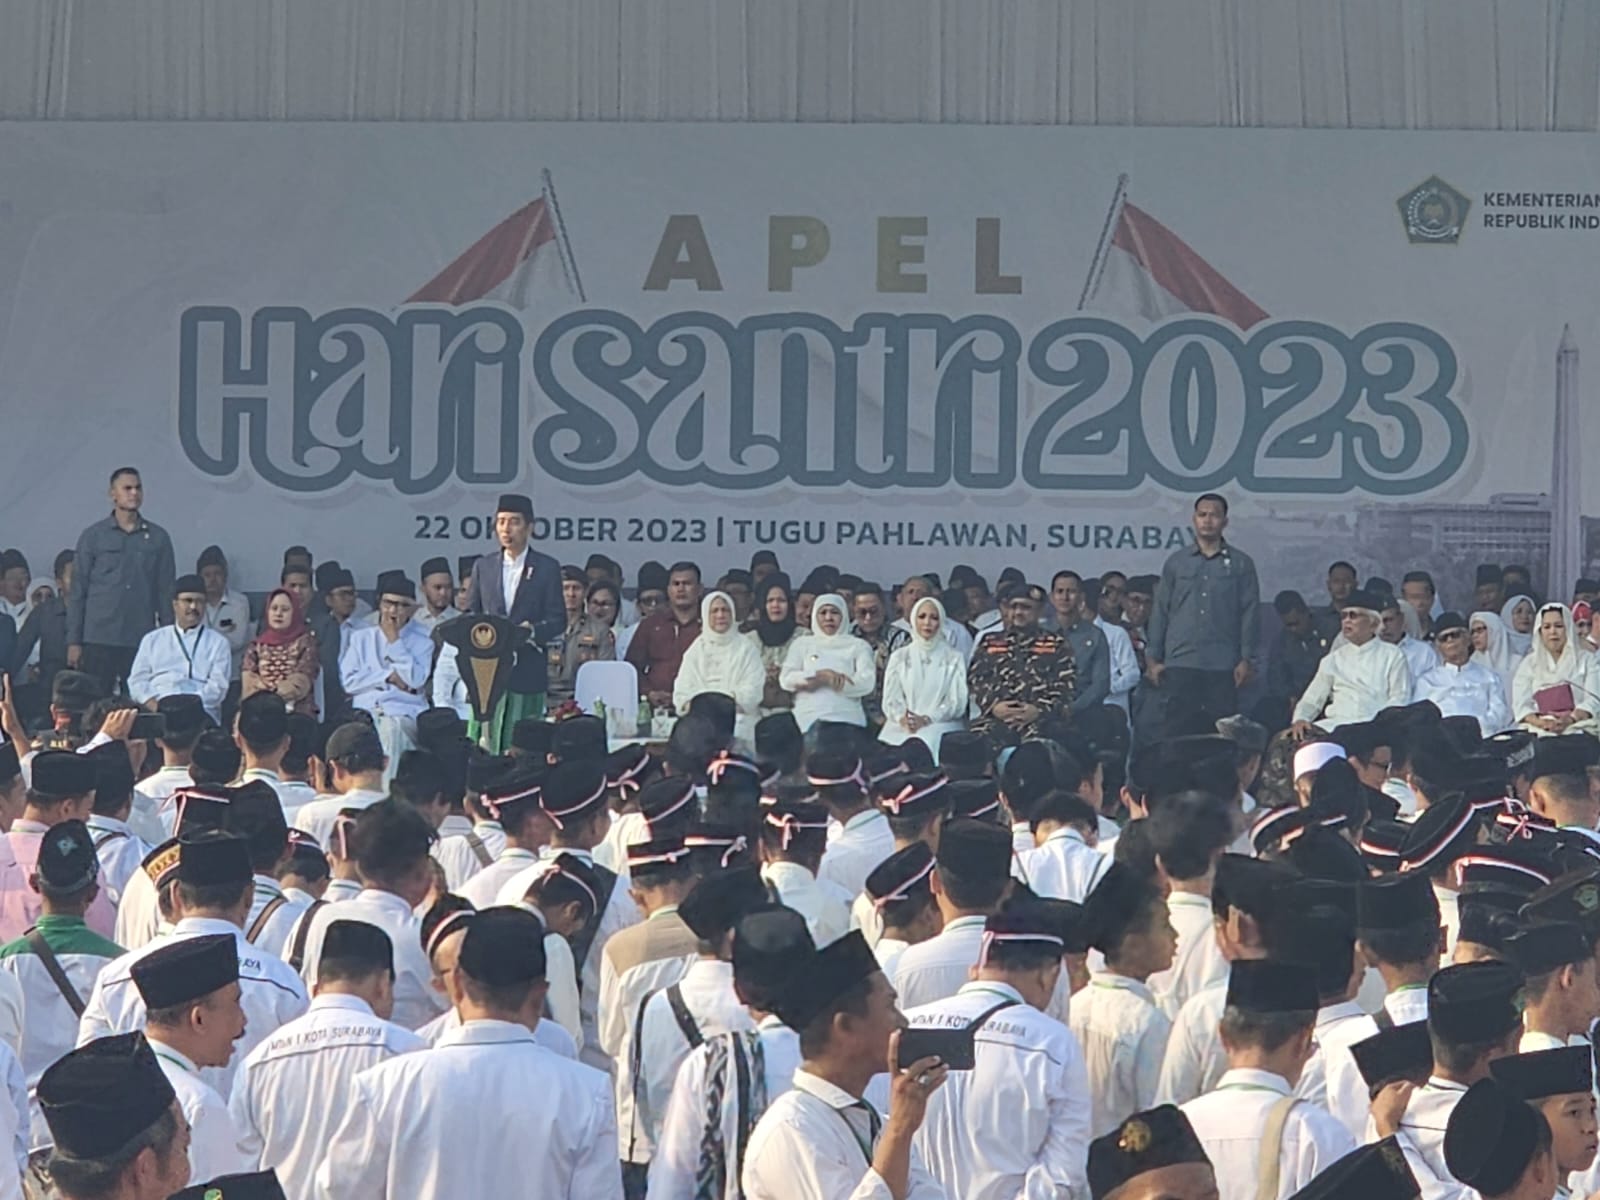 Jokowi Sapa Prabowo, Erick Thohir, dan Puan di Apel Hari Santri 2023, Para Santri Bersorak